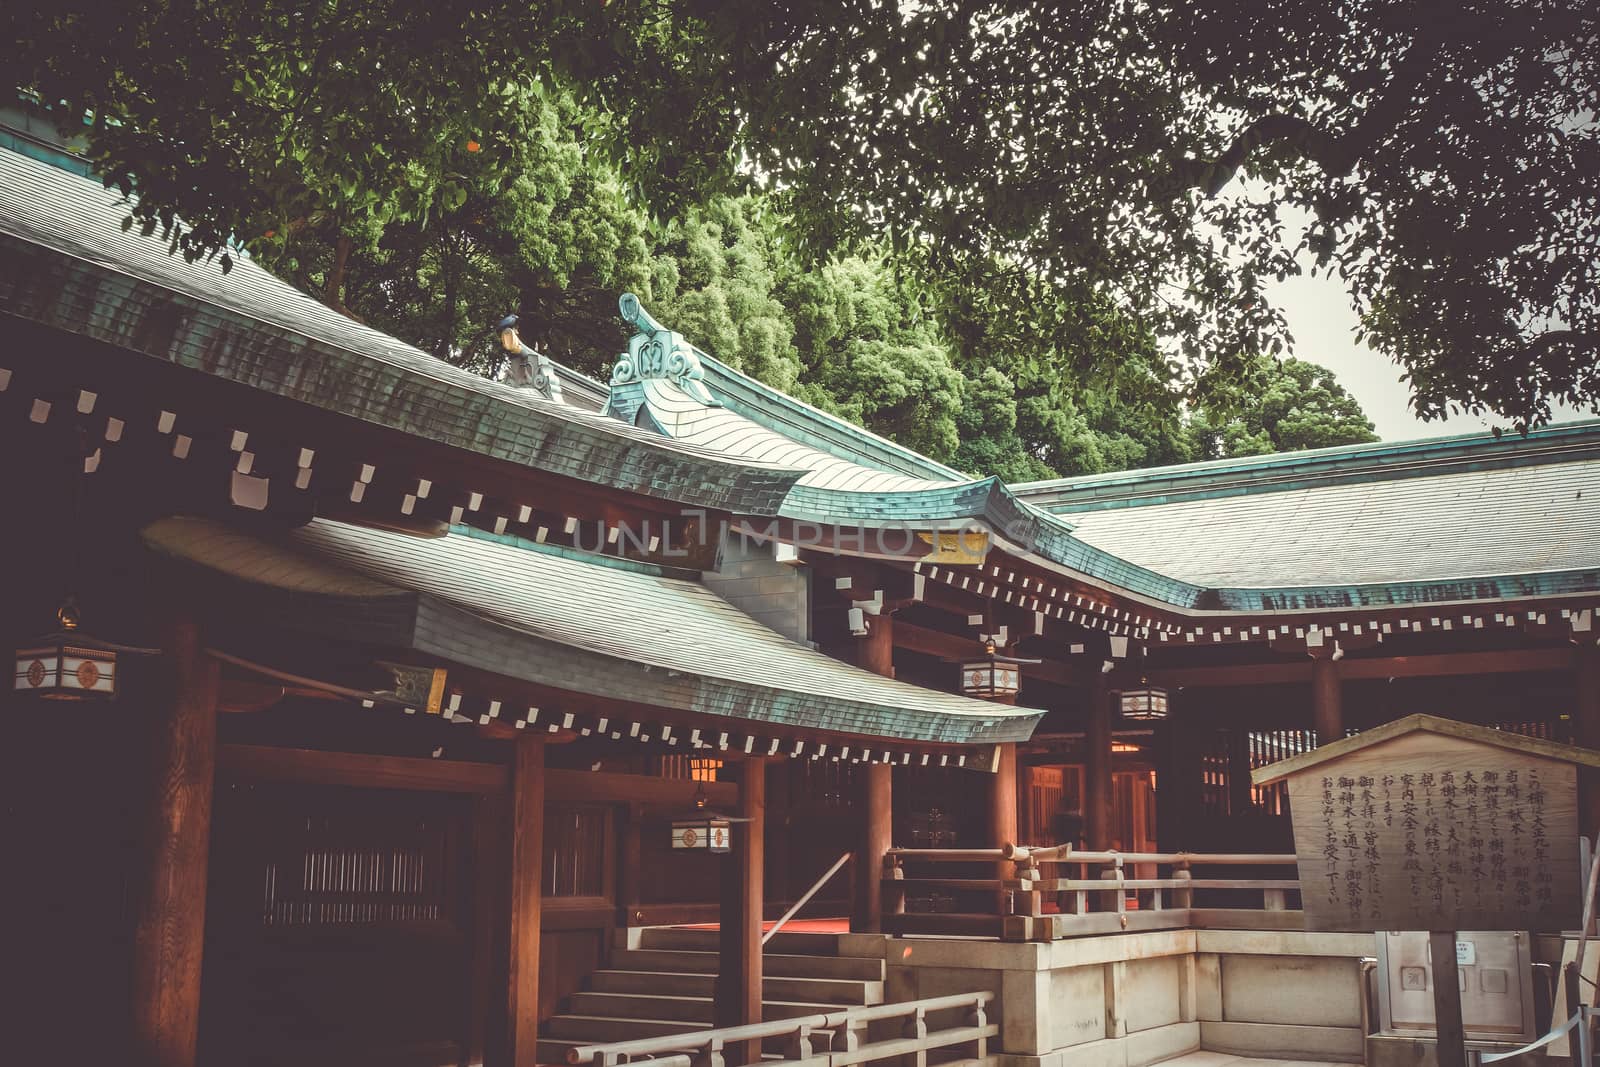 Meiji Shrine, Tokyo, Japan by daboost